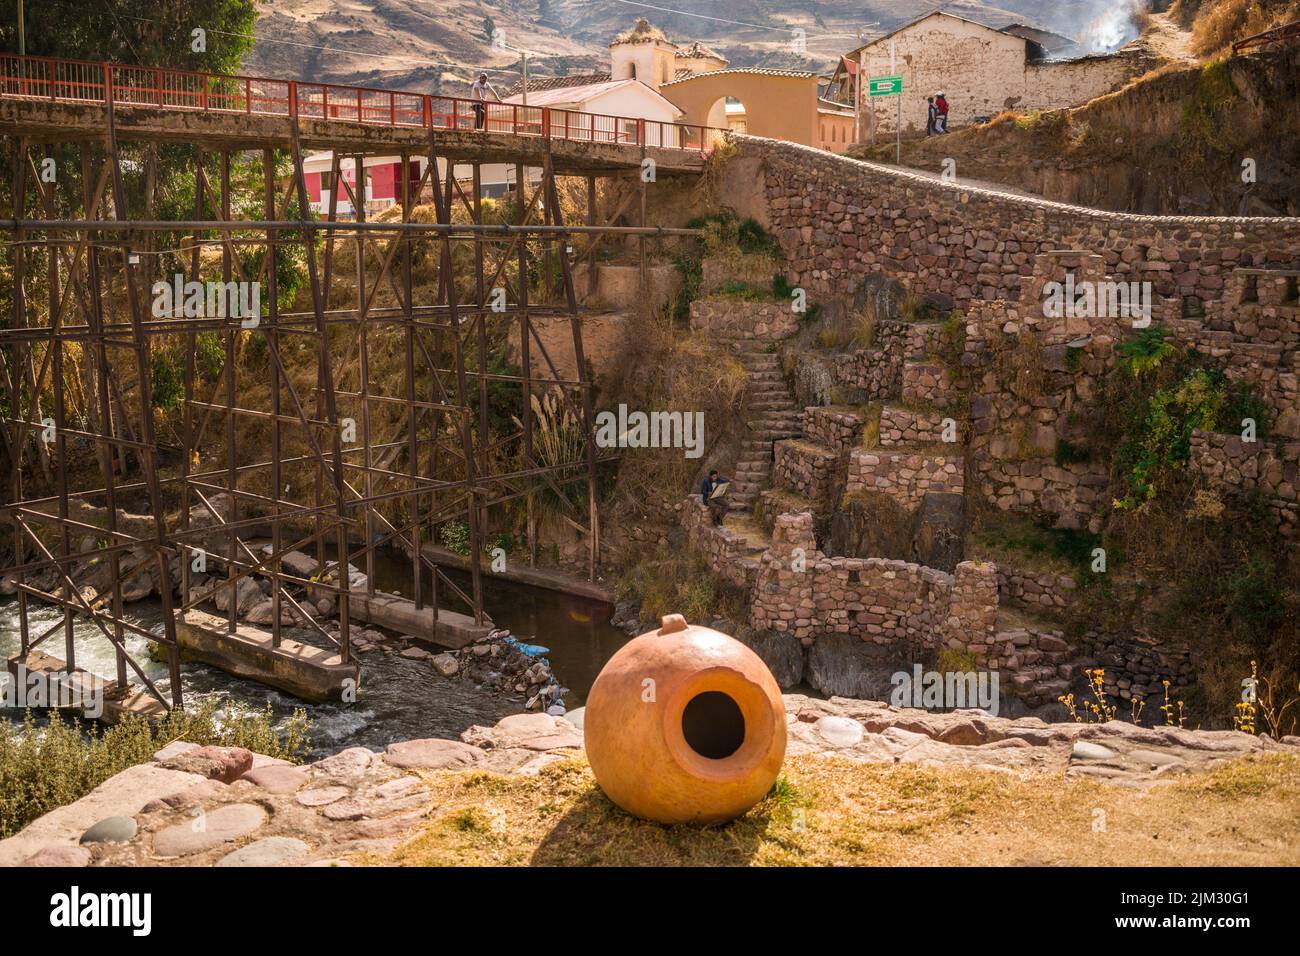 Tontopf mit Fluss in der Nähe von Steinbau und Metallbrücke in checacupe, cusco, peru Stockfoto